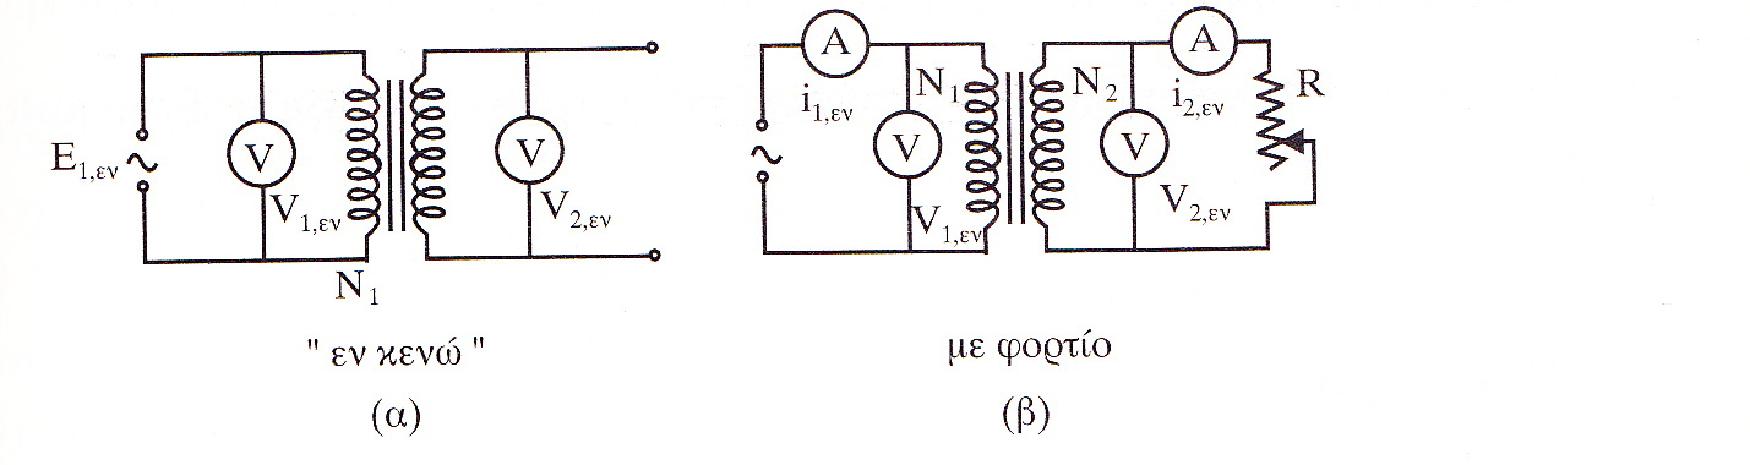 Ένας μετασχηματιστής μπορεί να χρησιμοποιηθεί και για να μετασχηματίζει, εκτός από τάση και ρεύμα. Συγκεκριμένα διακρίνουμε δύο τρόπους λειτουργίας του μετασχηματιστή: α) Λειτουργία εν κενώ.